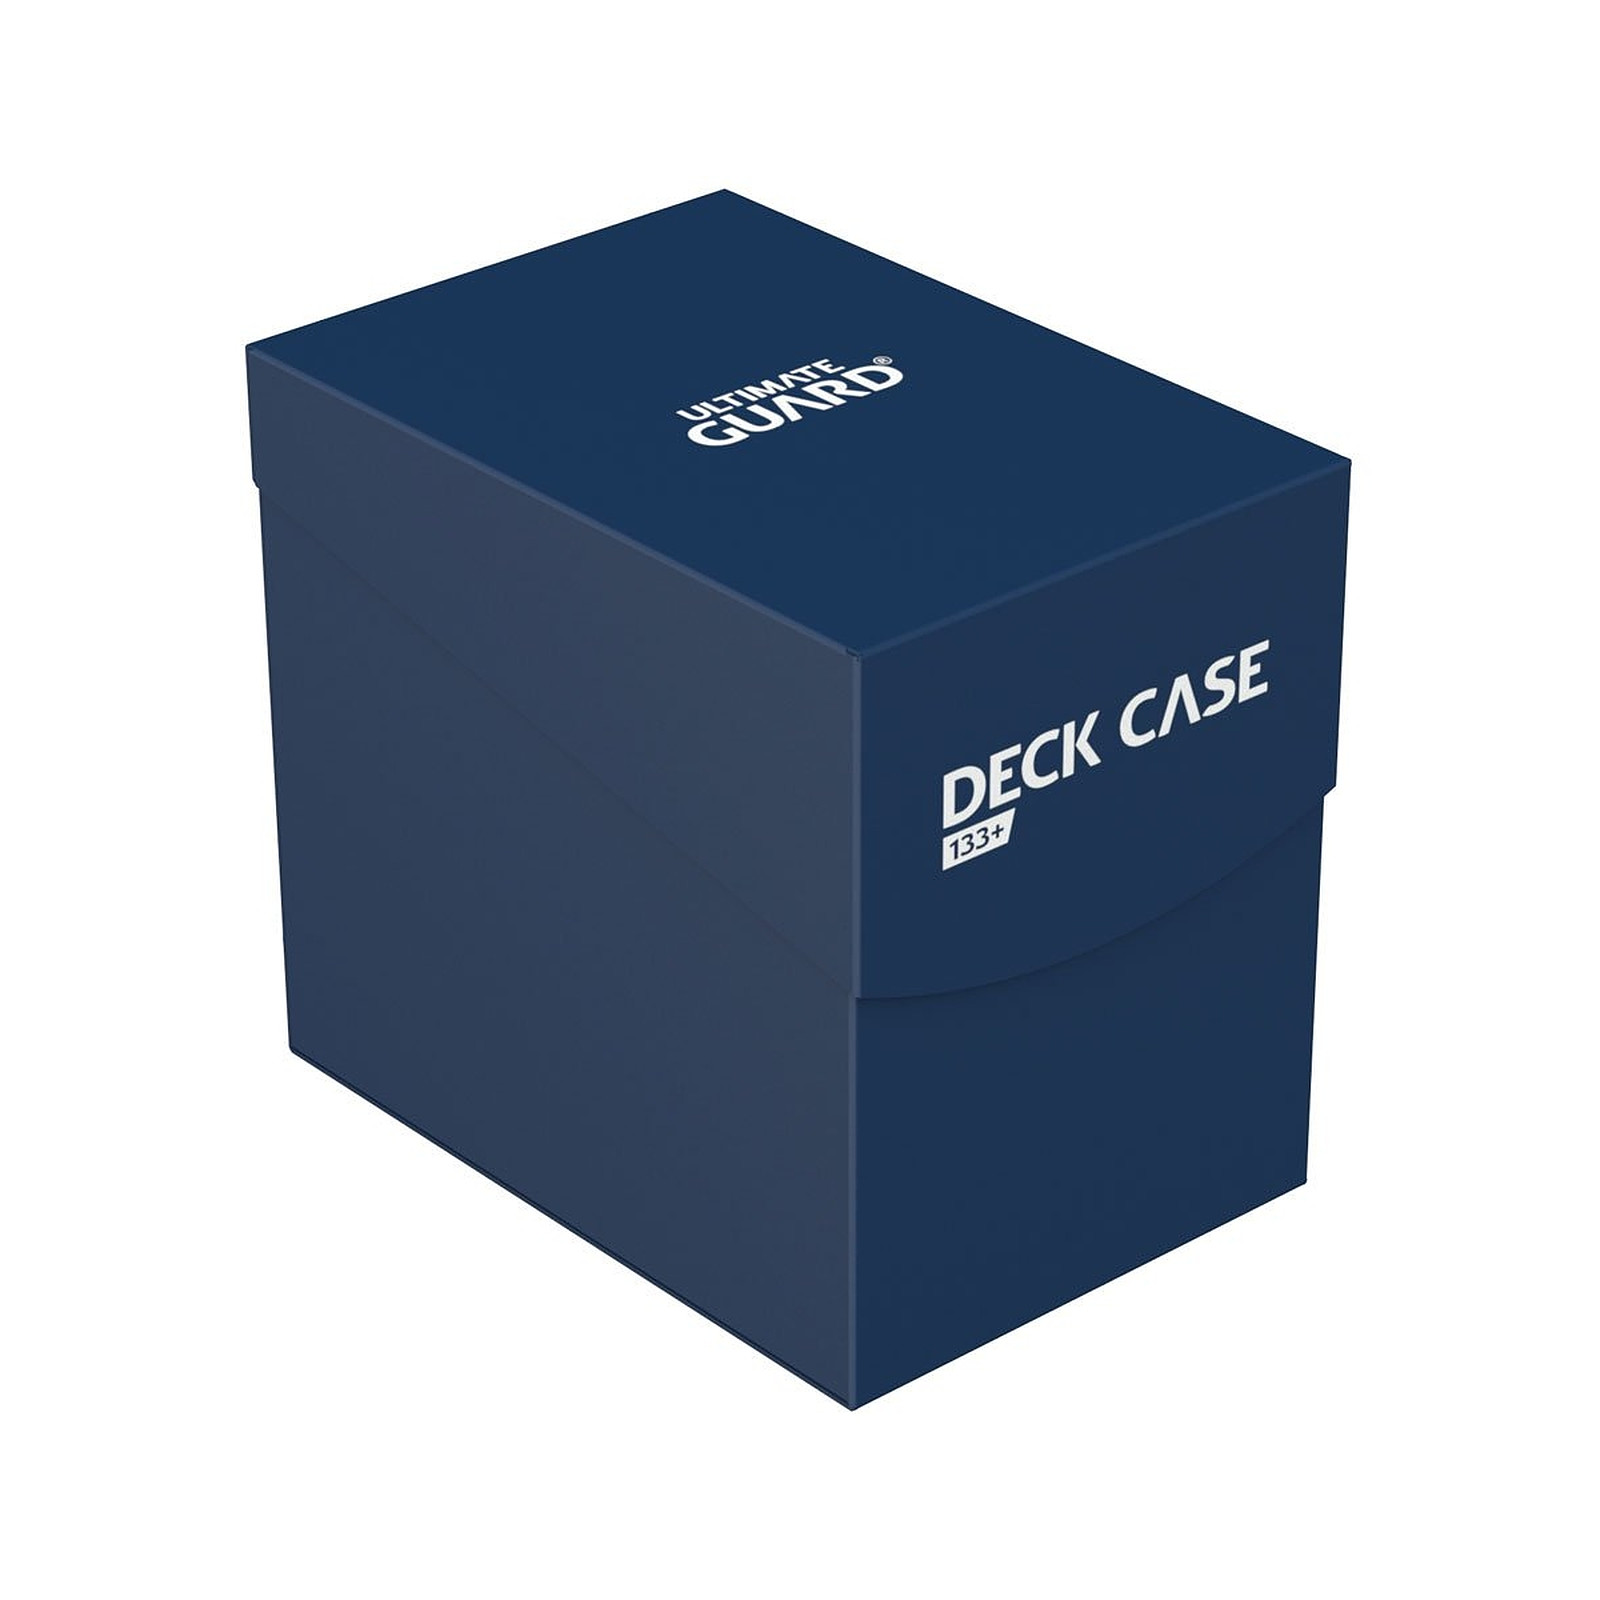 Ultimate Guard - Boite pour cartes Deck Case 133+ taille standard Bleu - Accessoire jeux Ultimate Guard